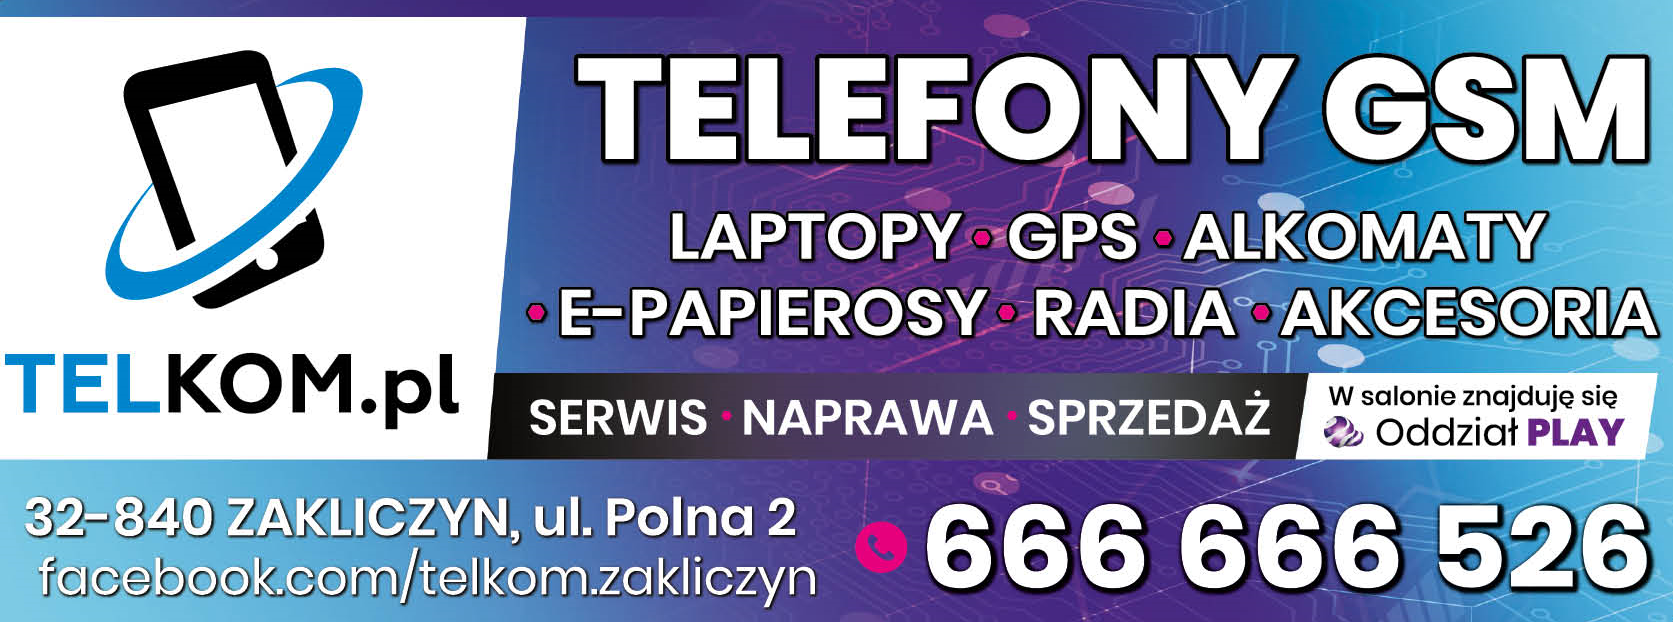 TELKOM.pl Zakliczyn Telefony GSM / Laptopy / GPS / Alkomaty / E-papierosy / Radia / Akcesoria